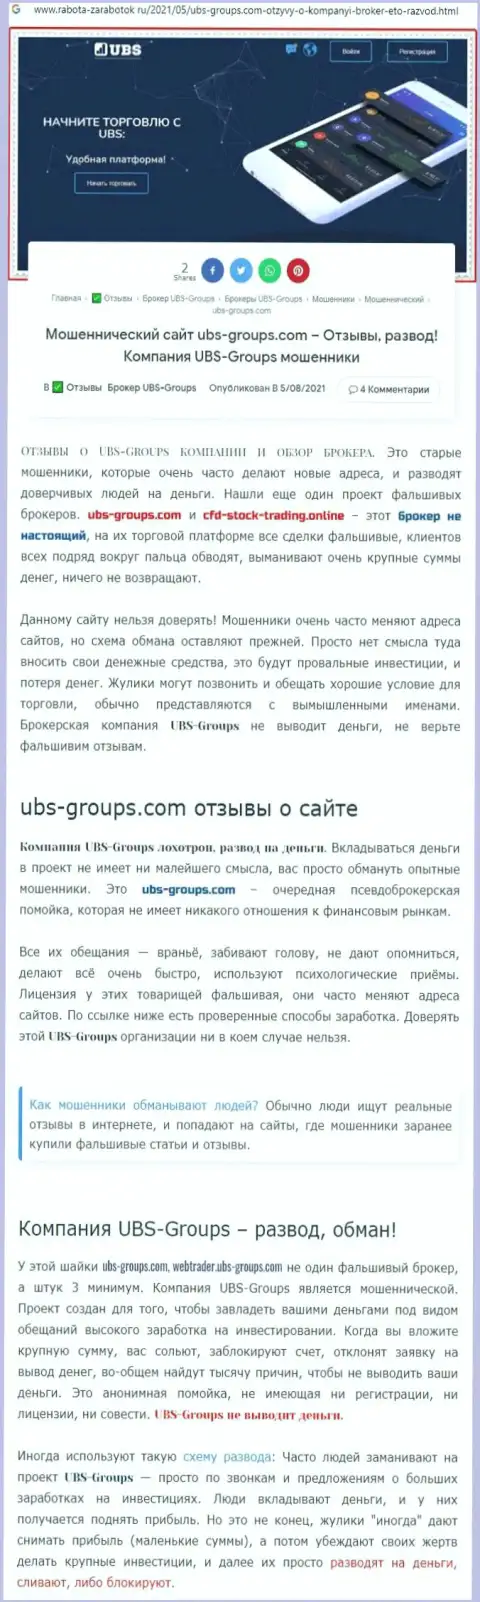 Автор объективного отзыва пишет, что UBS-Groups Com - это МОШЕННИКИ !